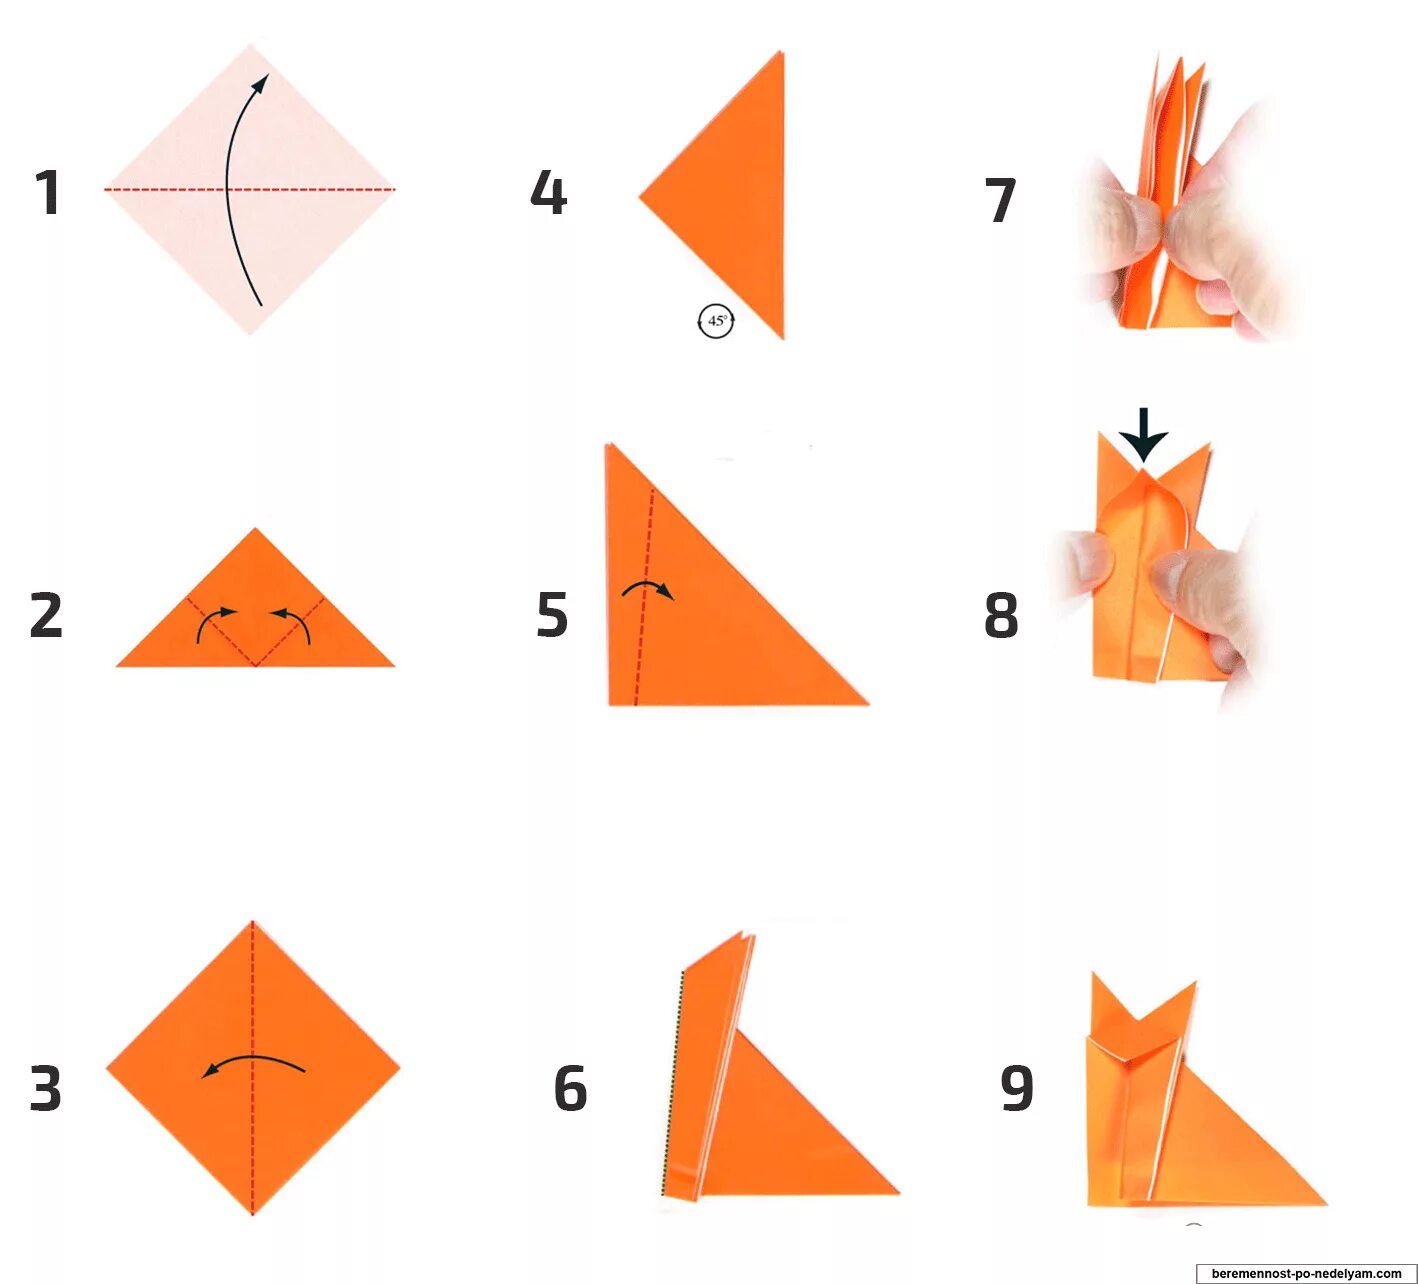 Простой способ оригами. Оригами из бумаги Лисичка пошагово для детей простой. Лисичка оригами из бумаги схемы для детей. Лиса оригами схема пошагово. Оригами схема пошаговая Лисичка.